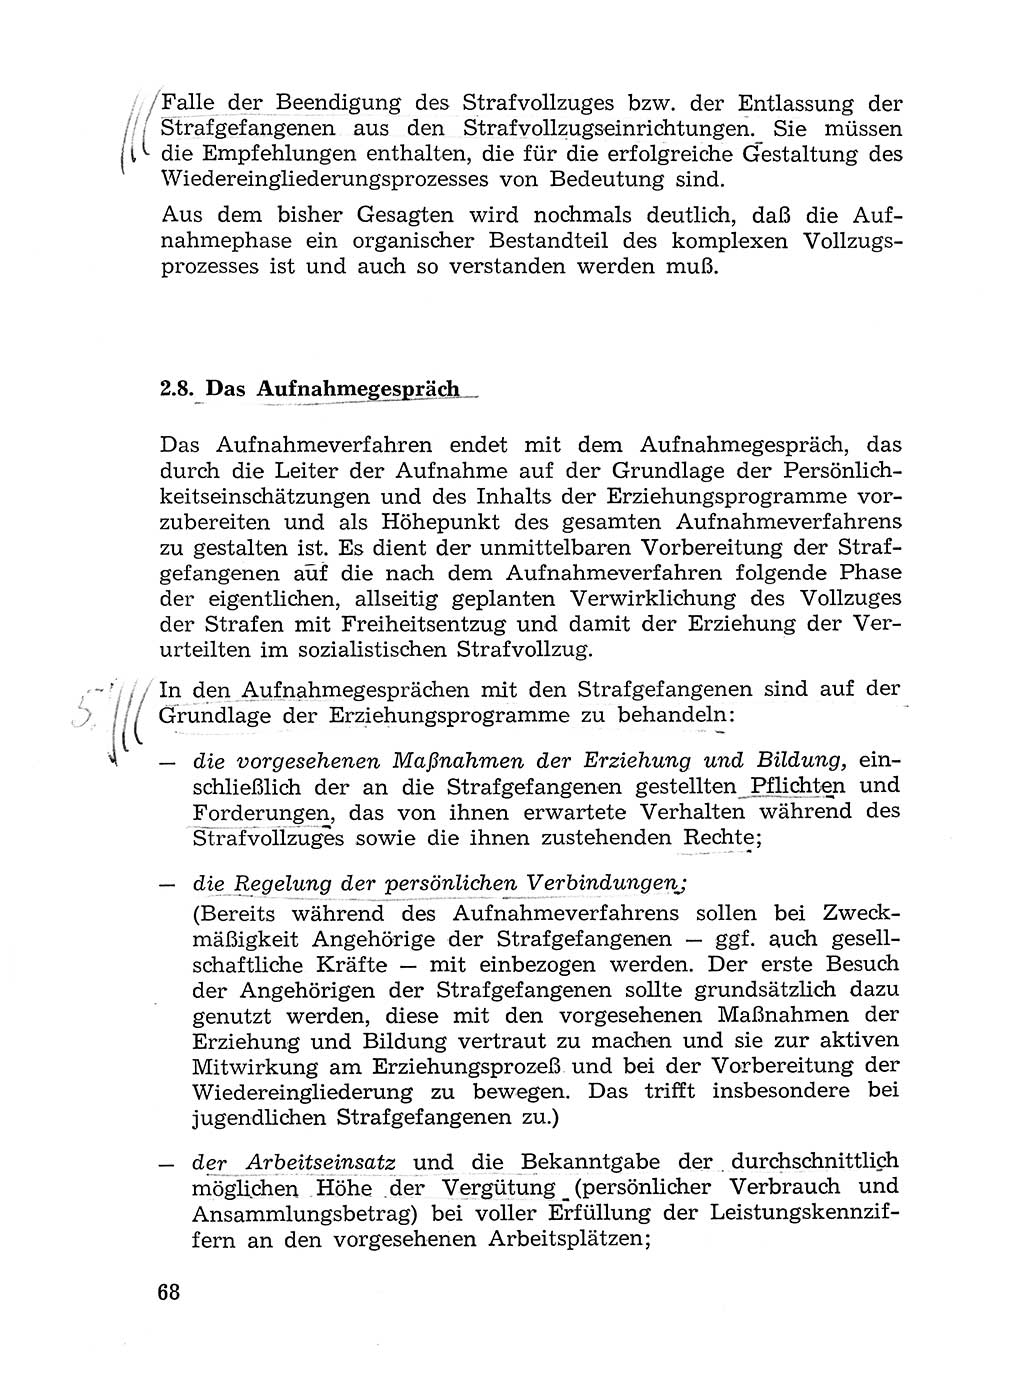 Sozialistischer Strafvollzug (SV) [Deutsche Demokratische Republik (DDR)] 1972, Seite 68 (Soz. SV DDR 1972, S. 68)